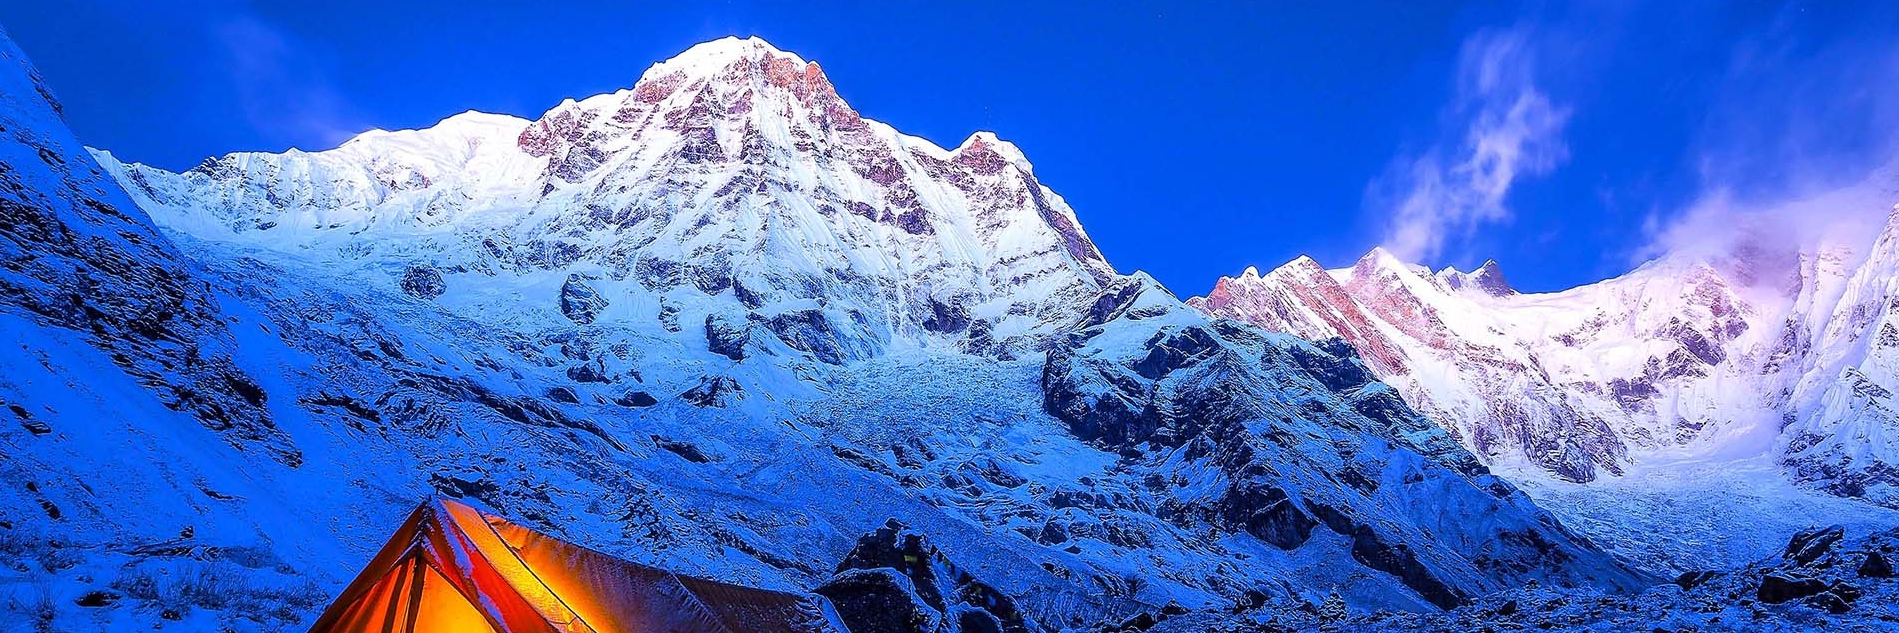 Annapurna region treks